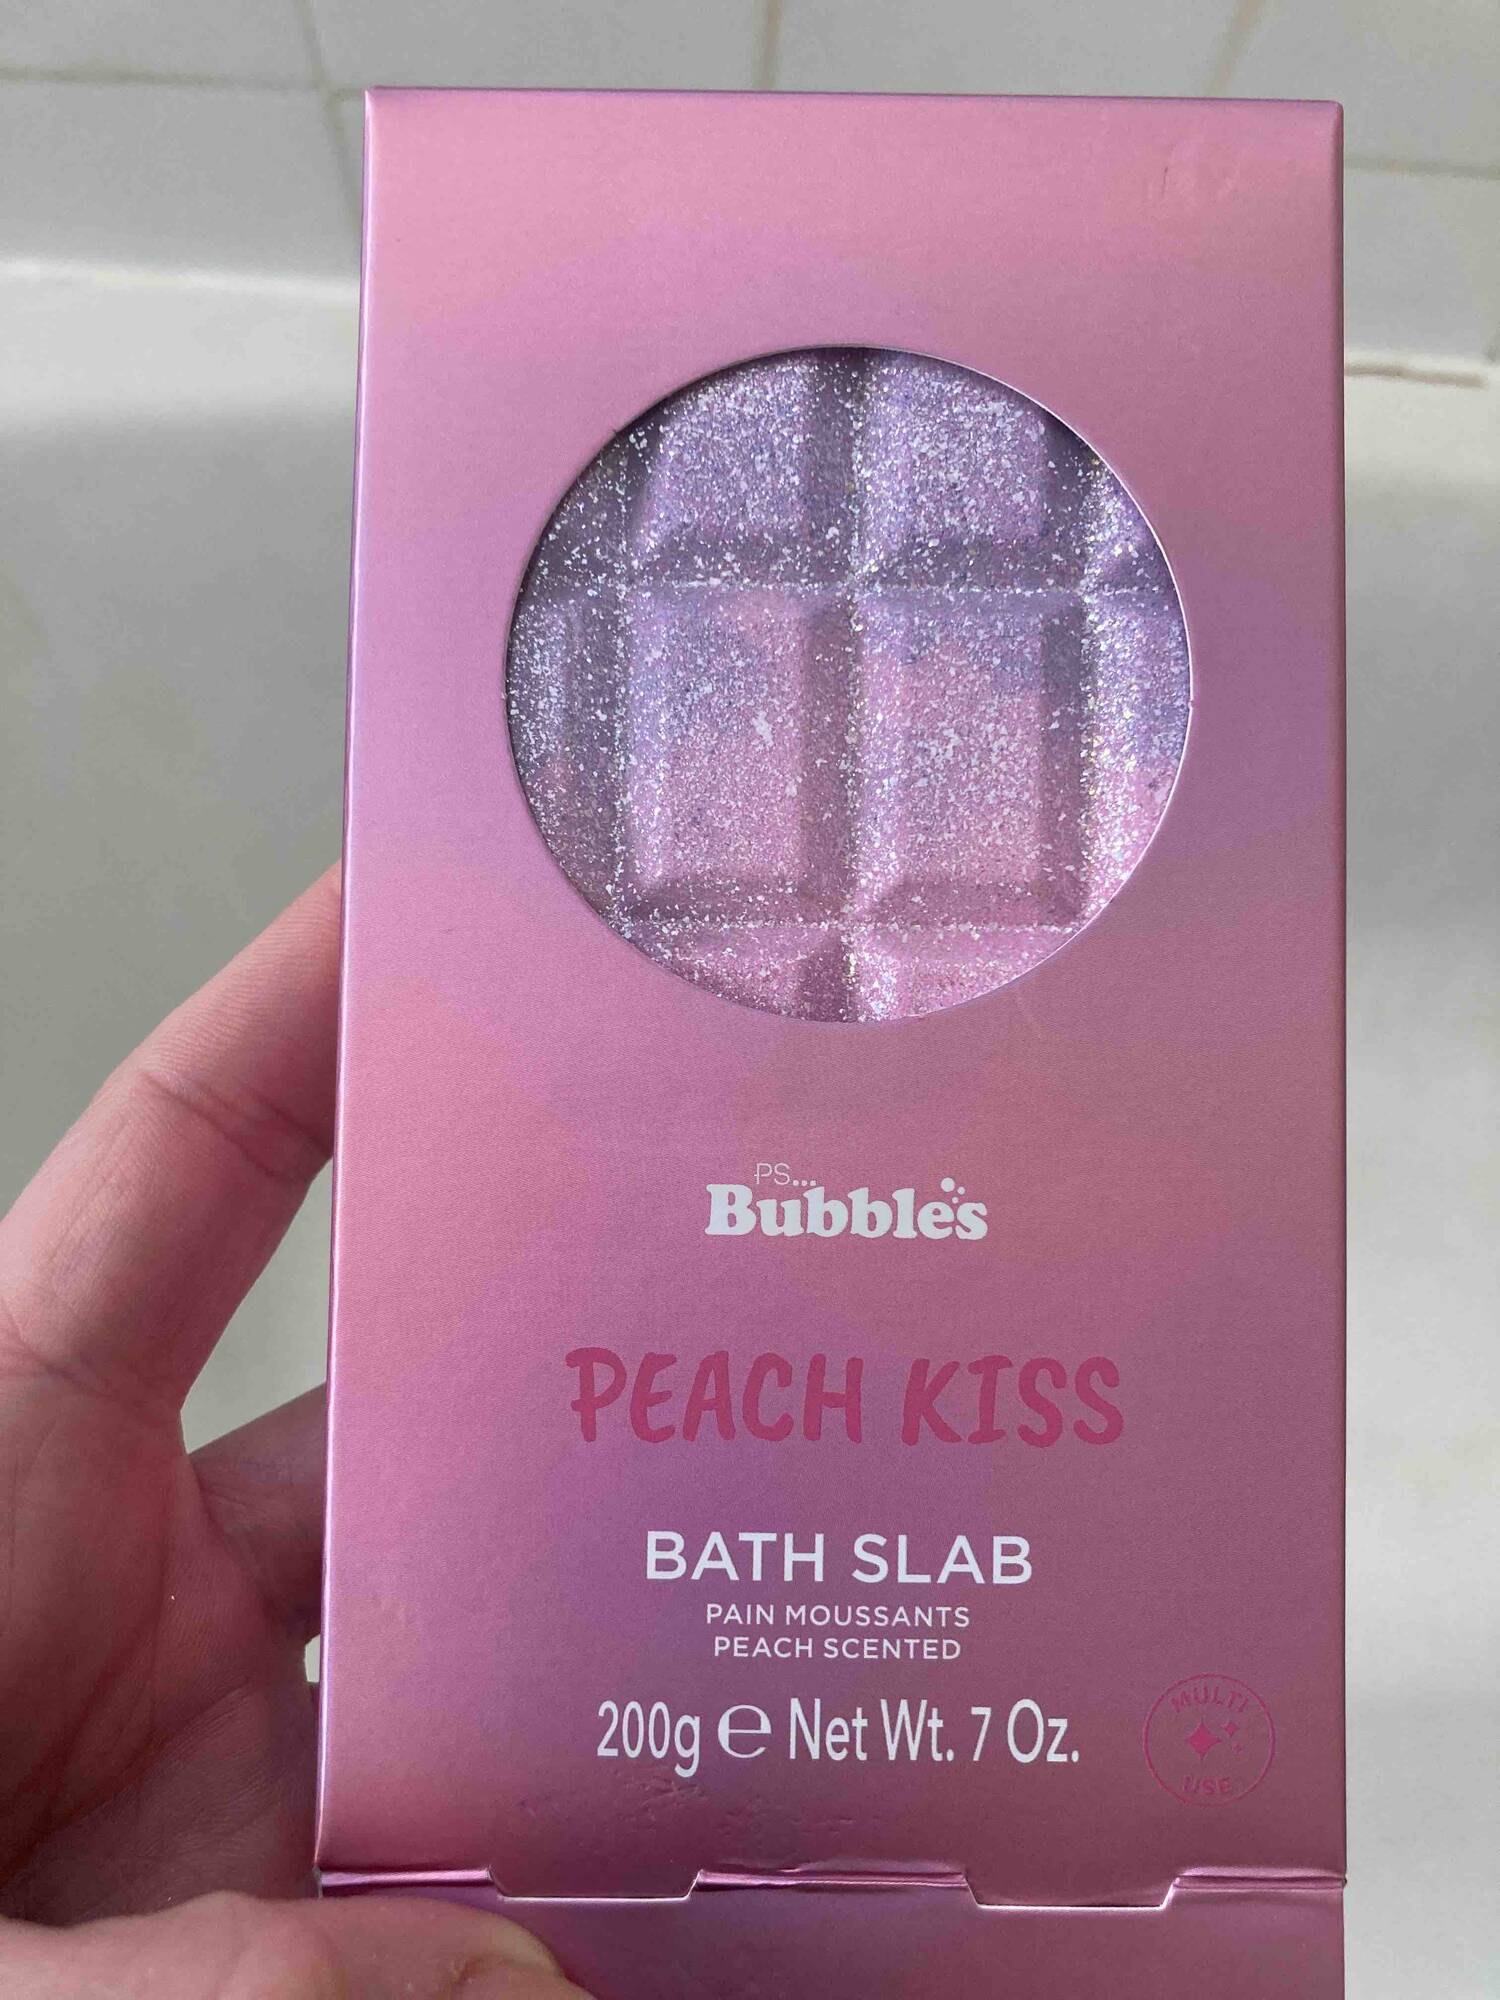 PRIMARK - Bubbles peach kiss - Pain moussants